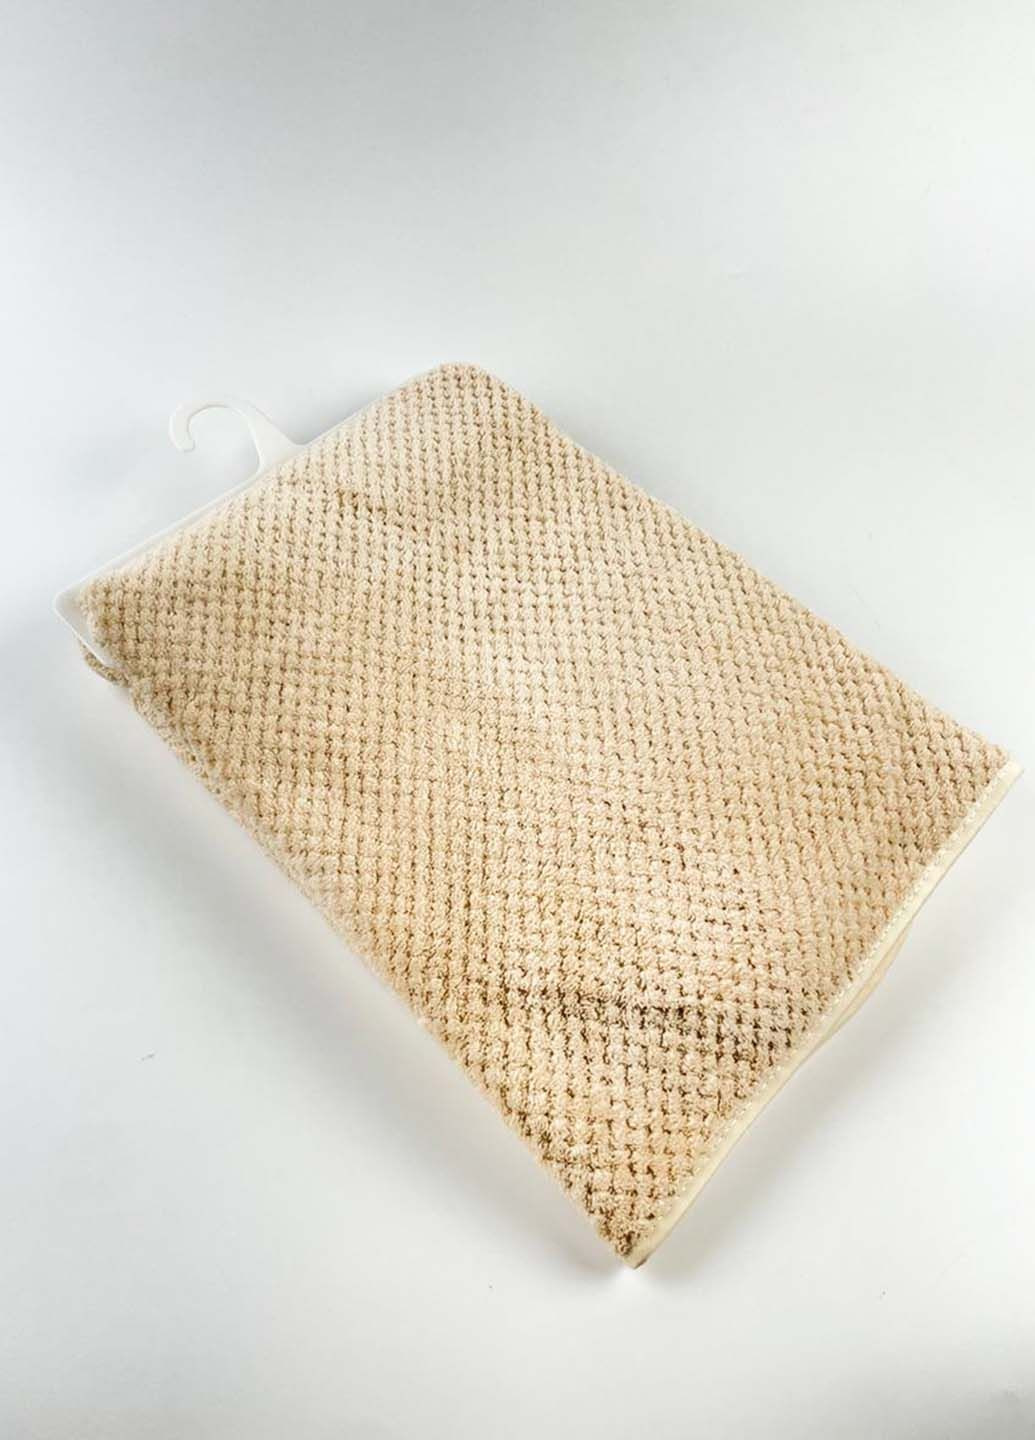 Homedec полотенце лицевое микрофибра 100х50 см однотонный молочный производство - Турция